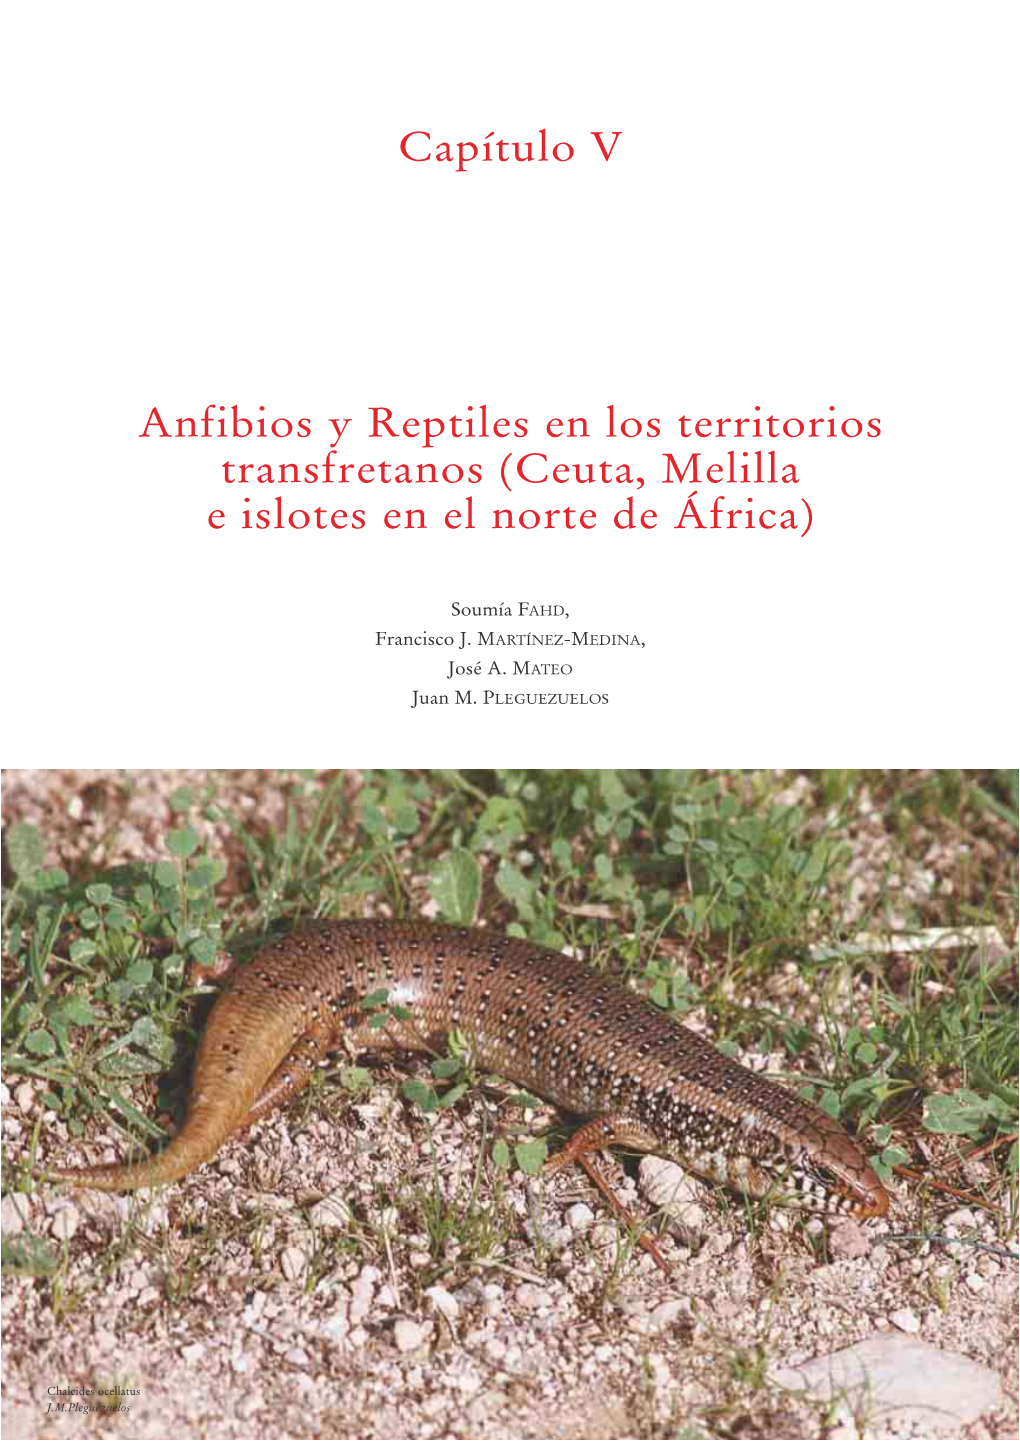 Capítulo V Anfibios Y Reptiles En Los Territorios Transfretanos (Ceuta